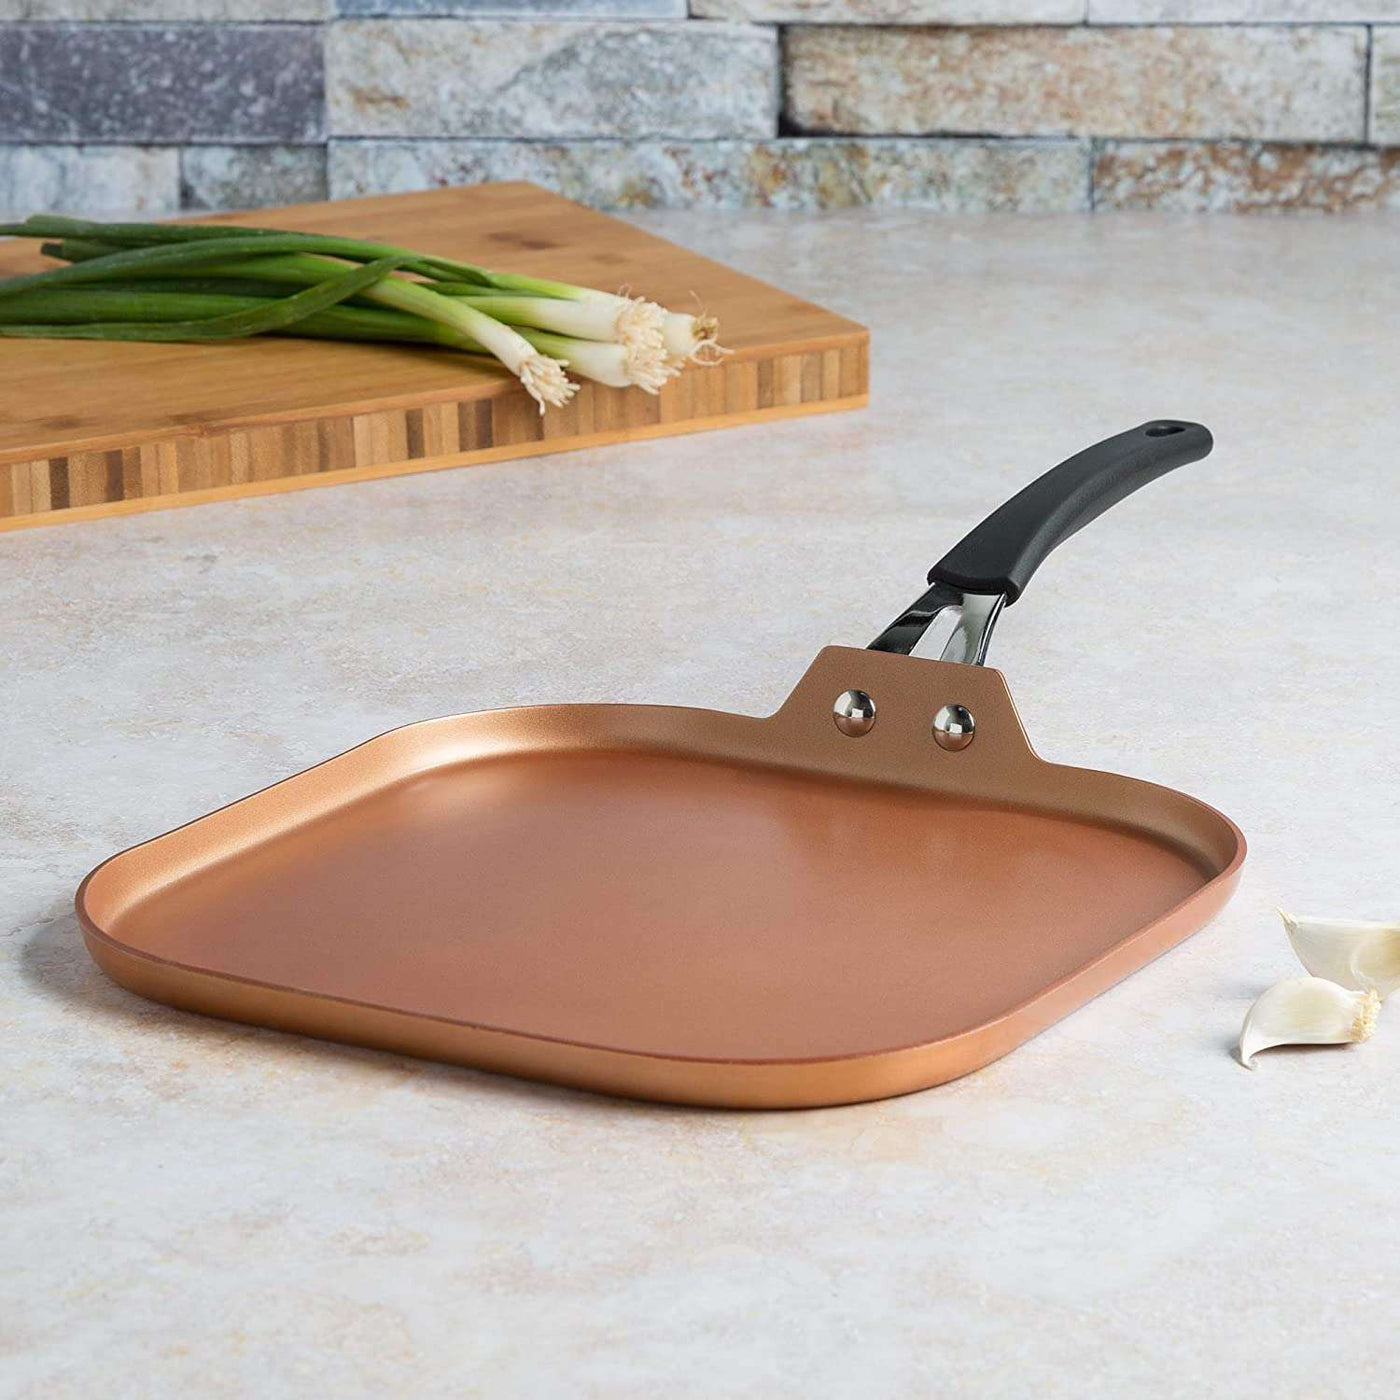 Endure Titanium Guard Non-Stick Griddle Pan, 11 Inch – Ecolution Cookware